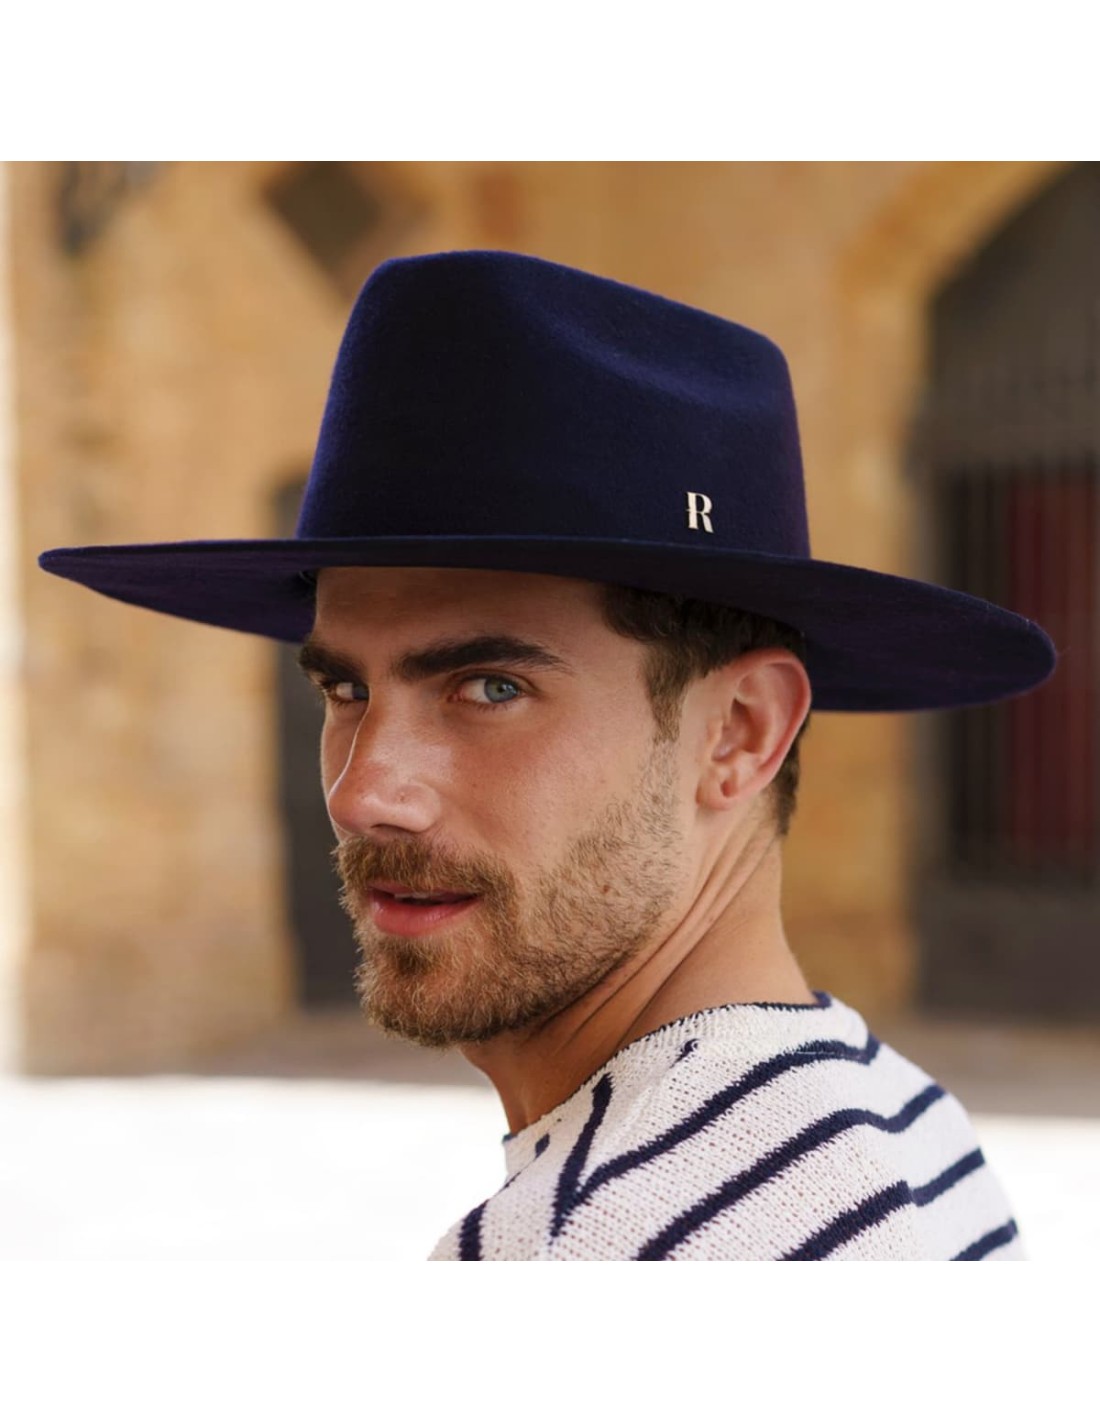 Sombrero Cowboy Azul Marino - 100% Lana Rígida - Hecho en España